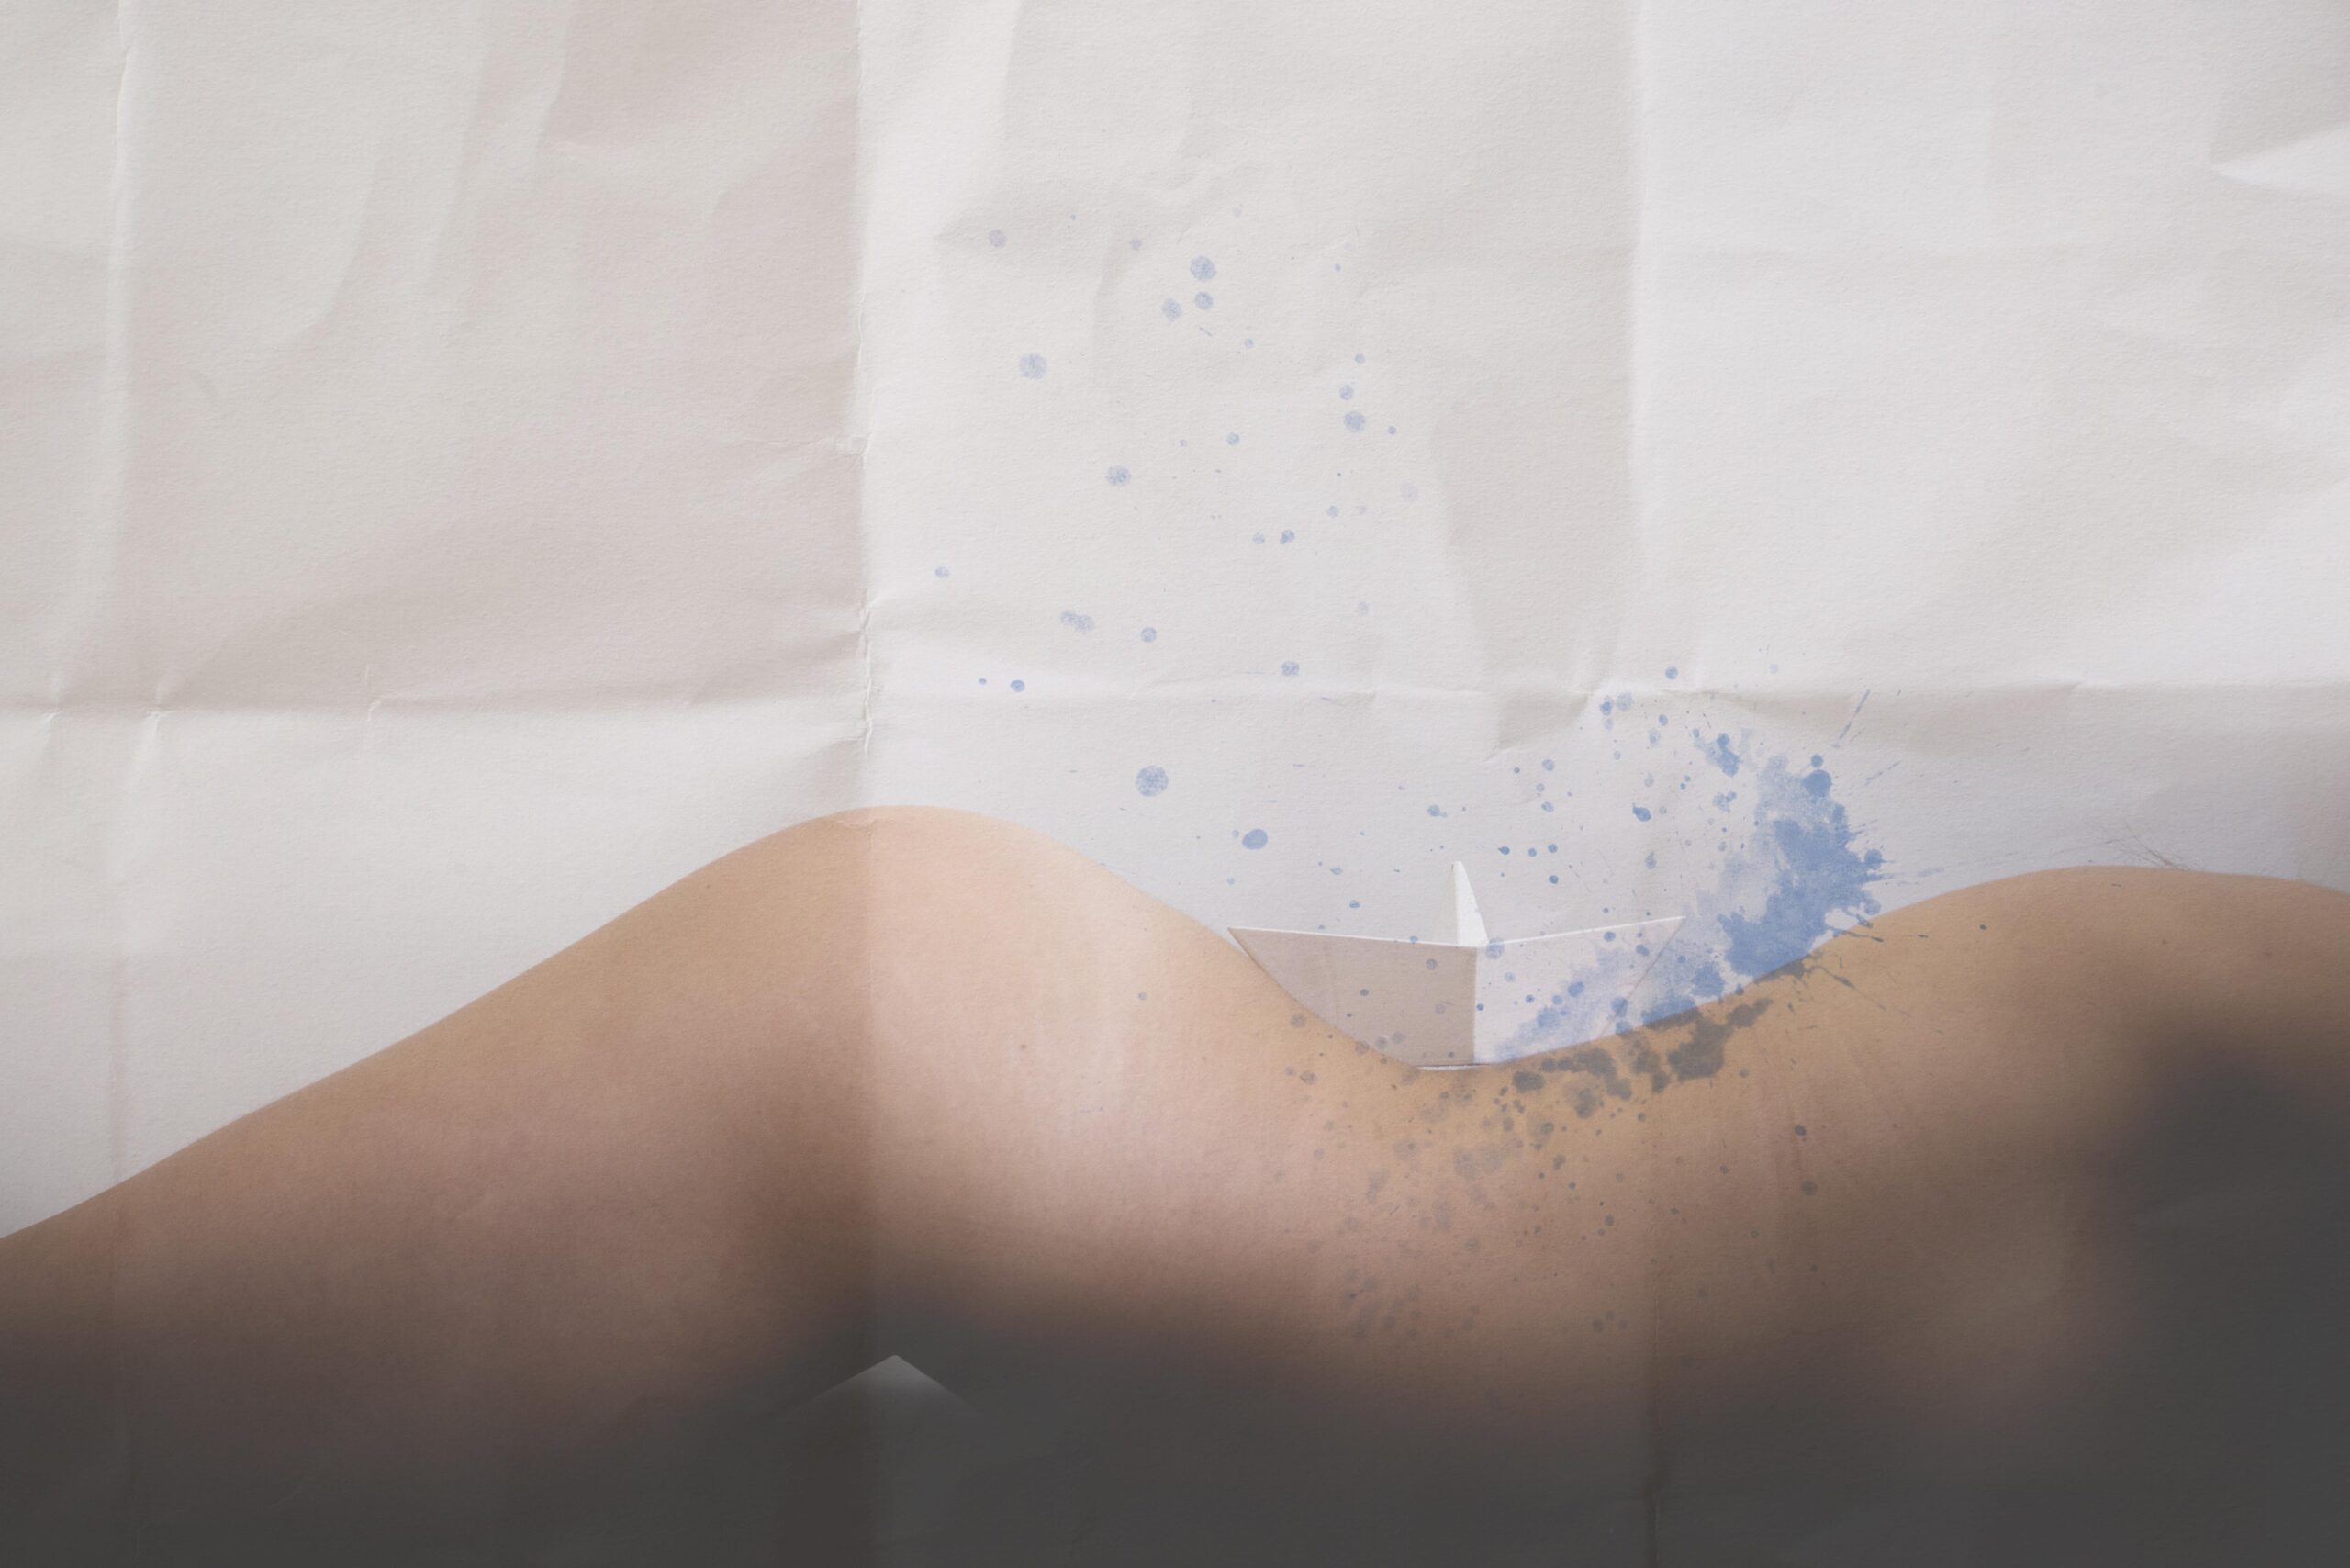 El mar de tu piel – Paper textures